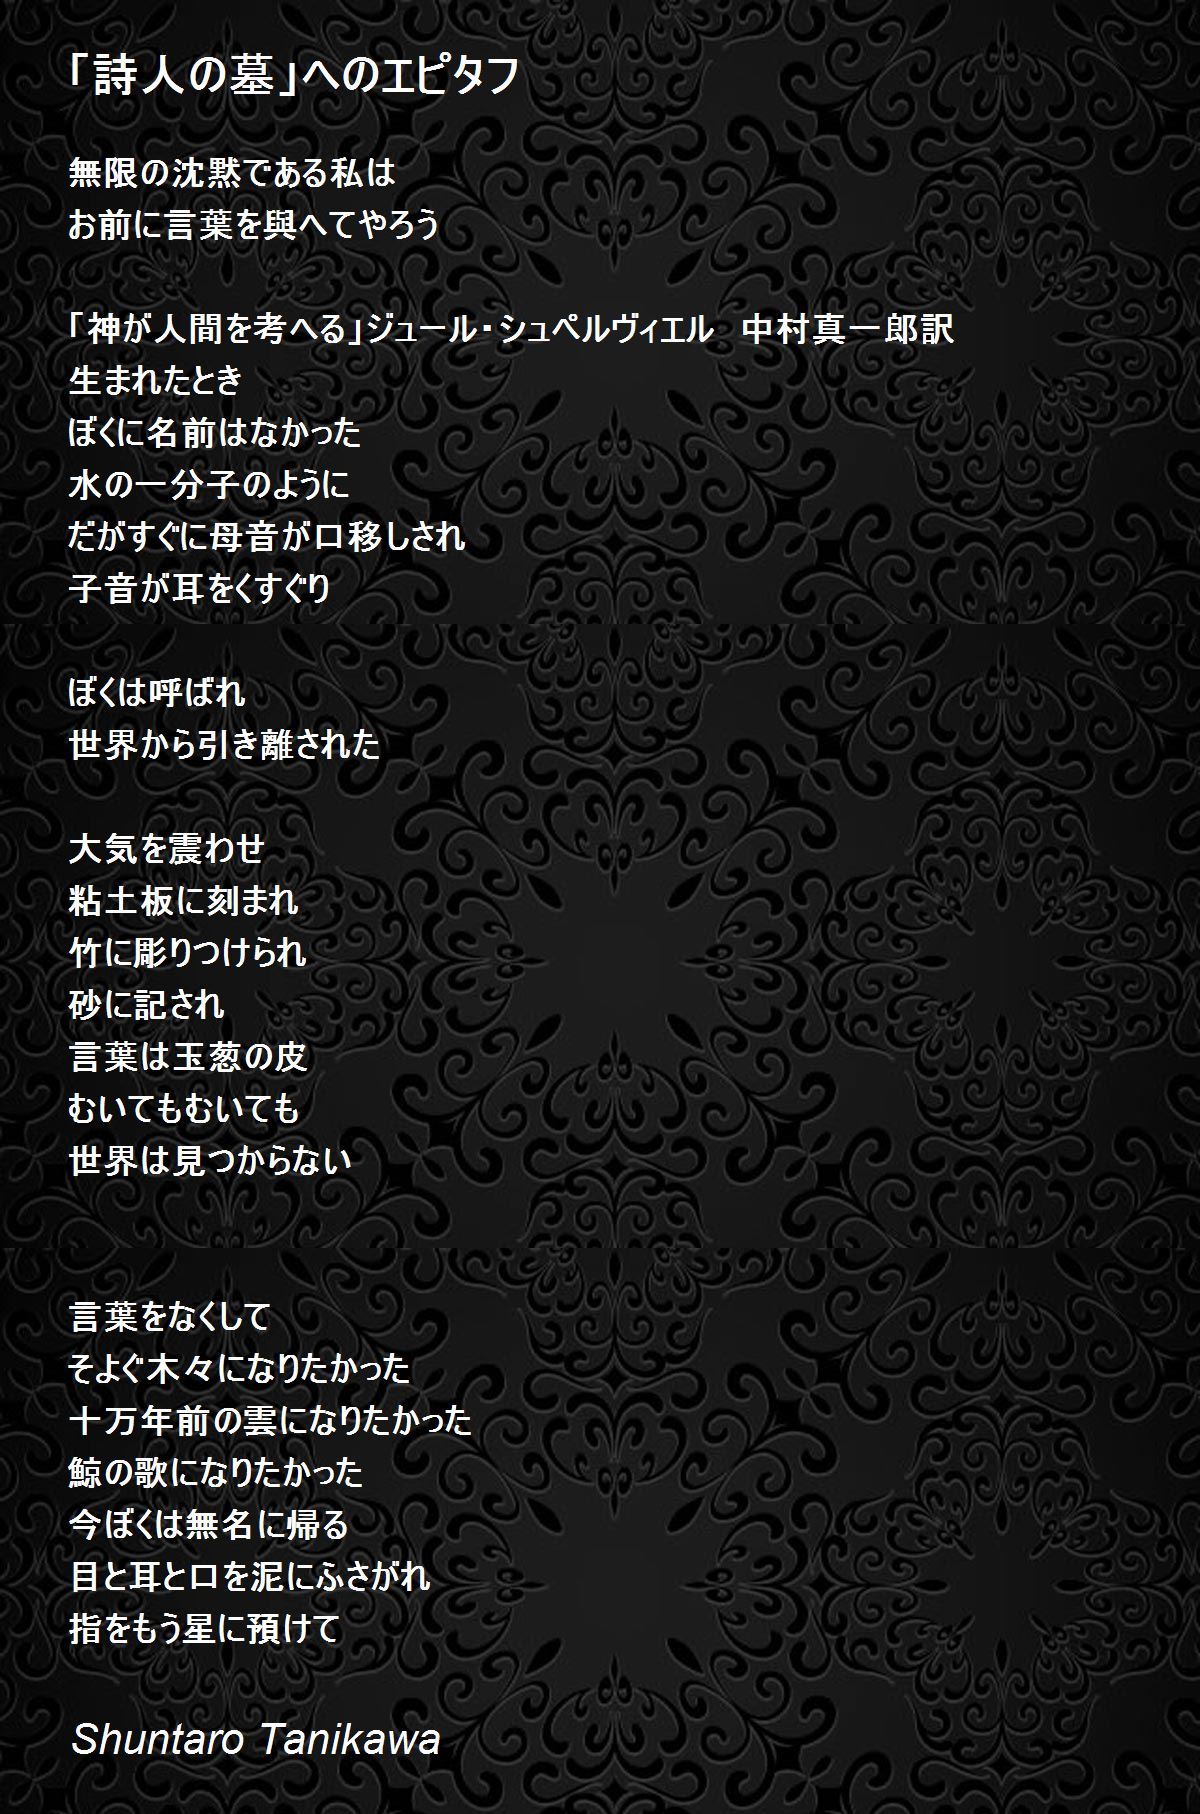 詩人の墓 へのエピタフ Poem By Shuntaro Tanikawa Poem Hunter